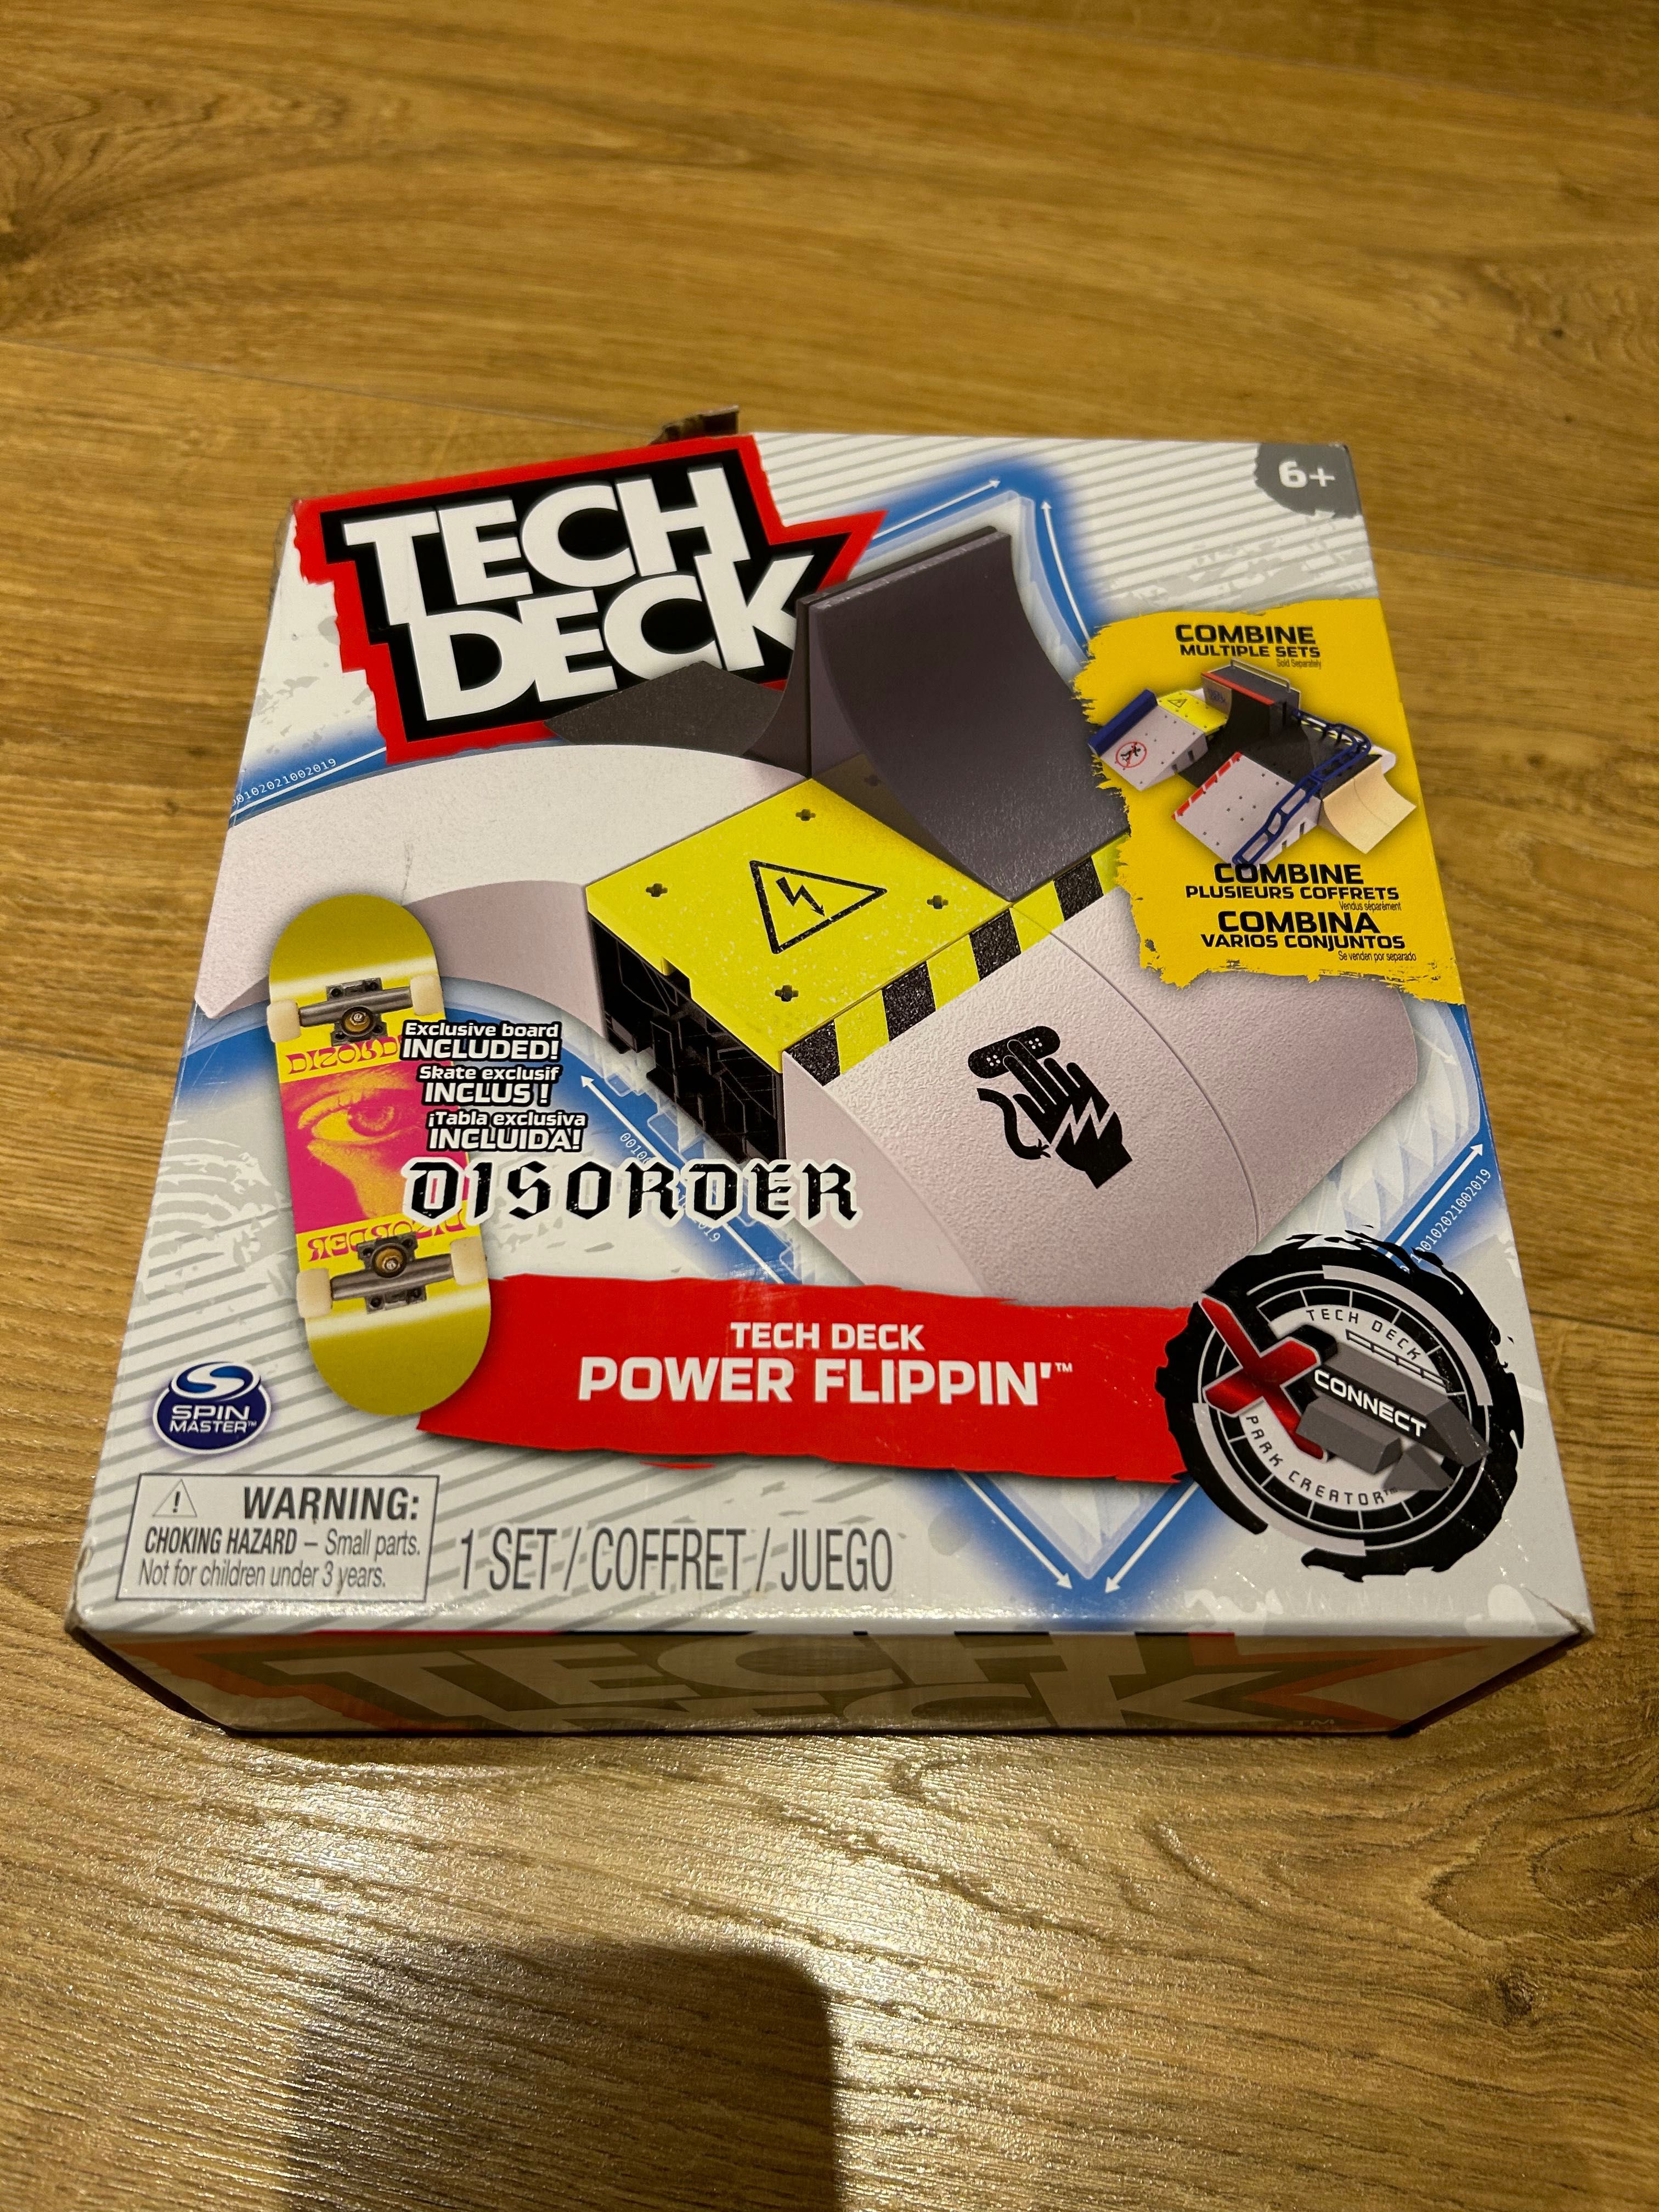 Tech Deck power flippin